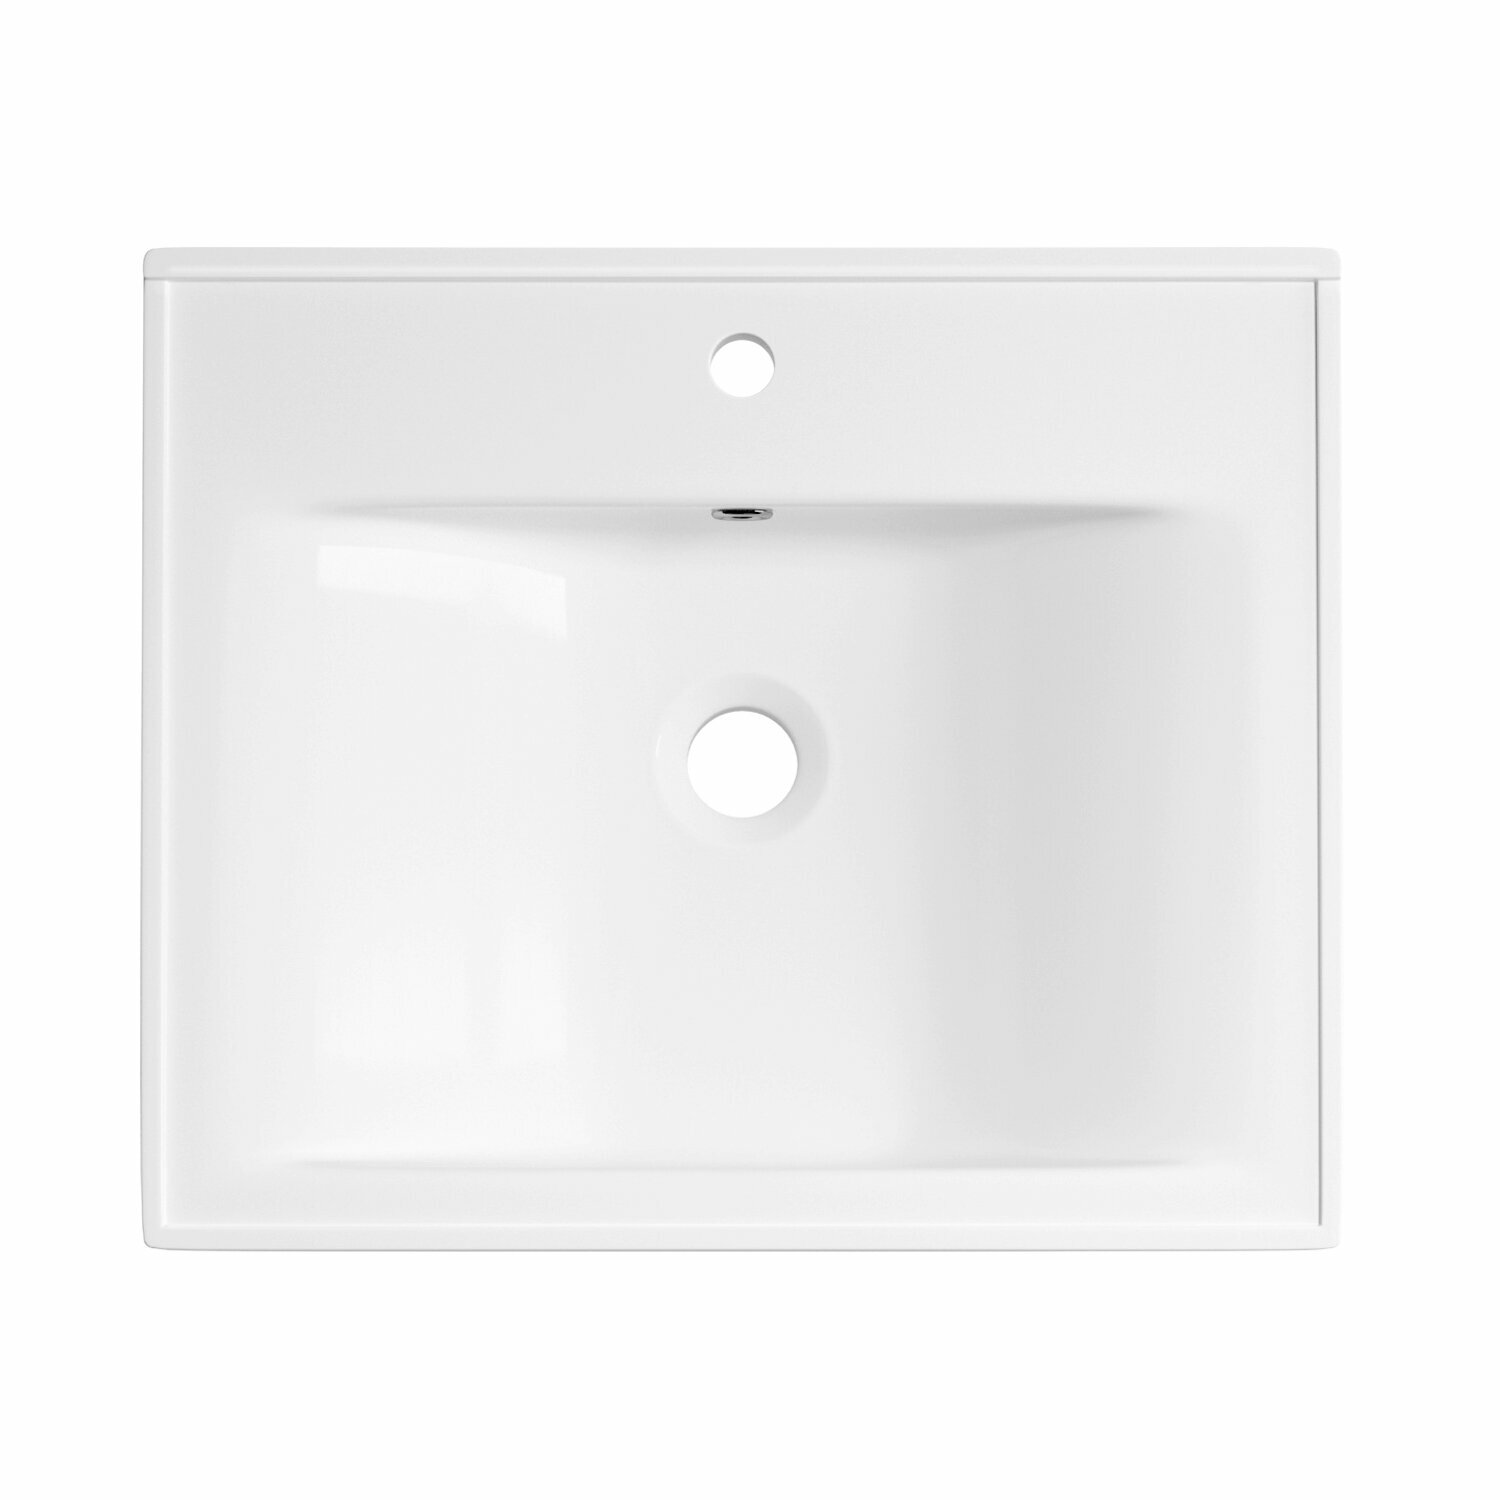 Подвесная/мебельная раковина для ванной Wellsee FreeDom 151101001 в наборе 2 в 1: раковины 2 шт, ширина одного умывальника 50 см, цвет глянцевый белый - фотография № 3